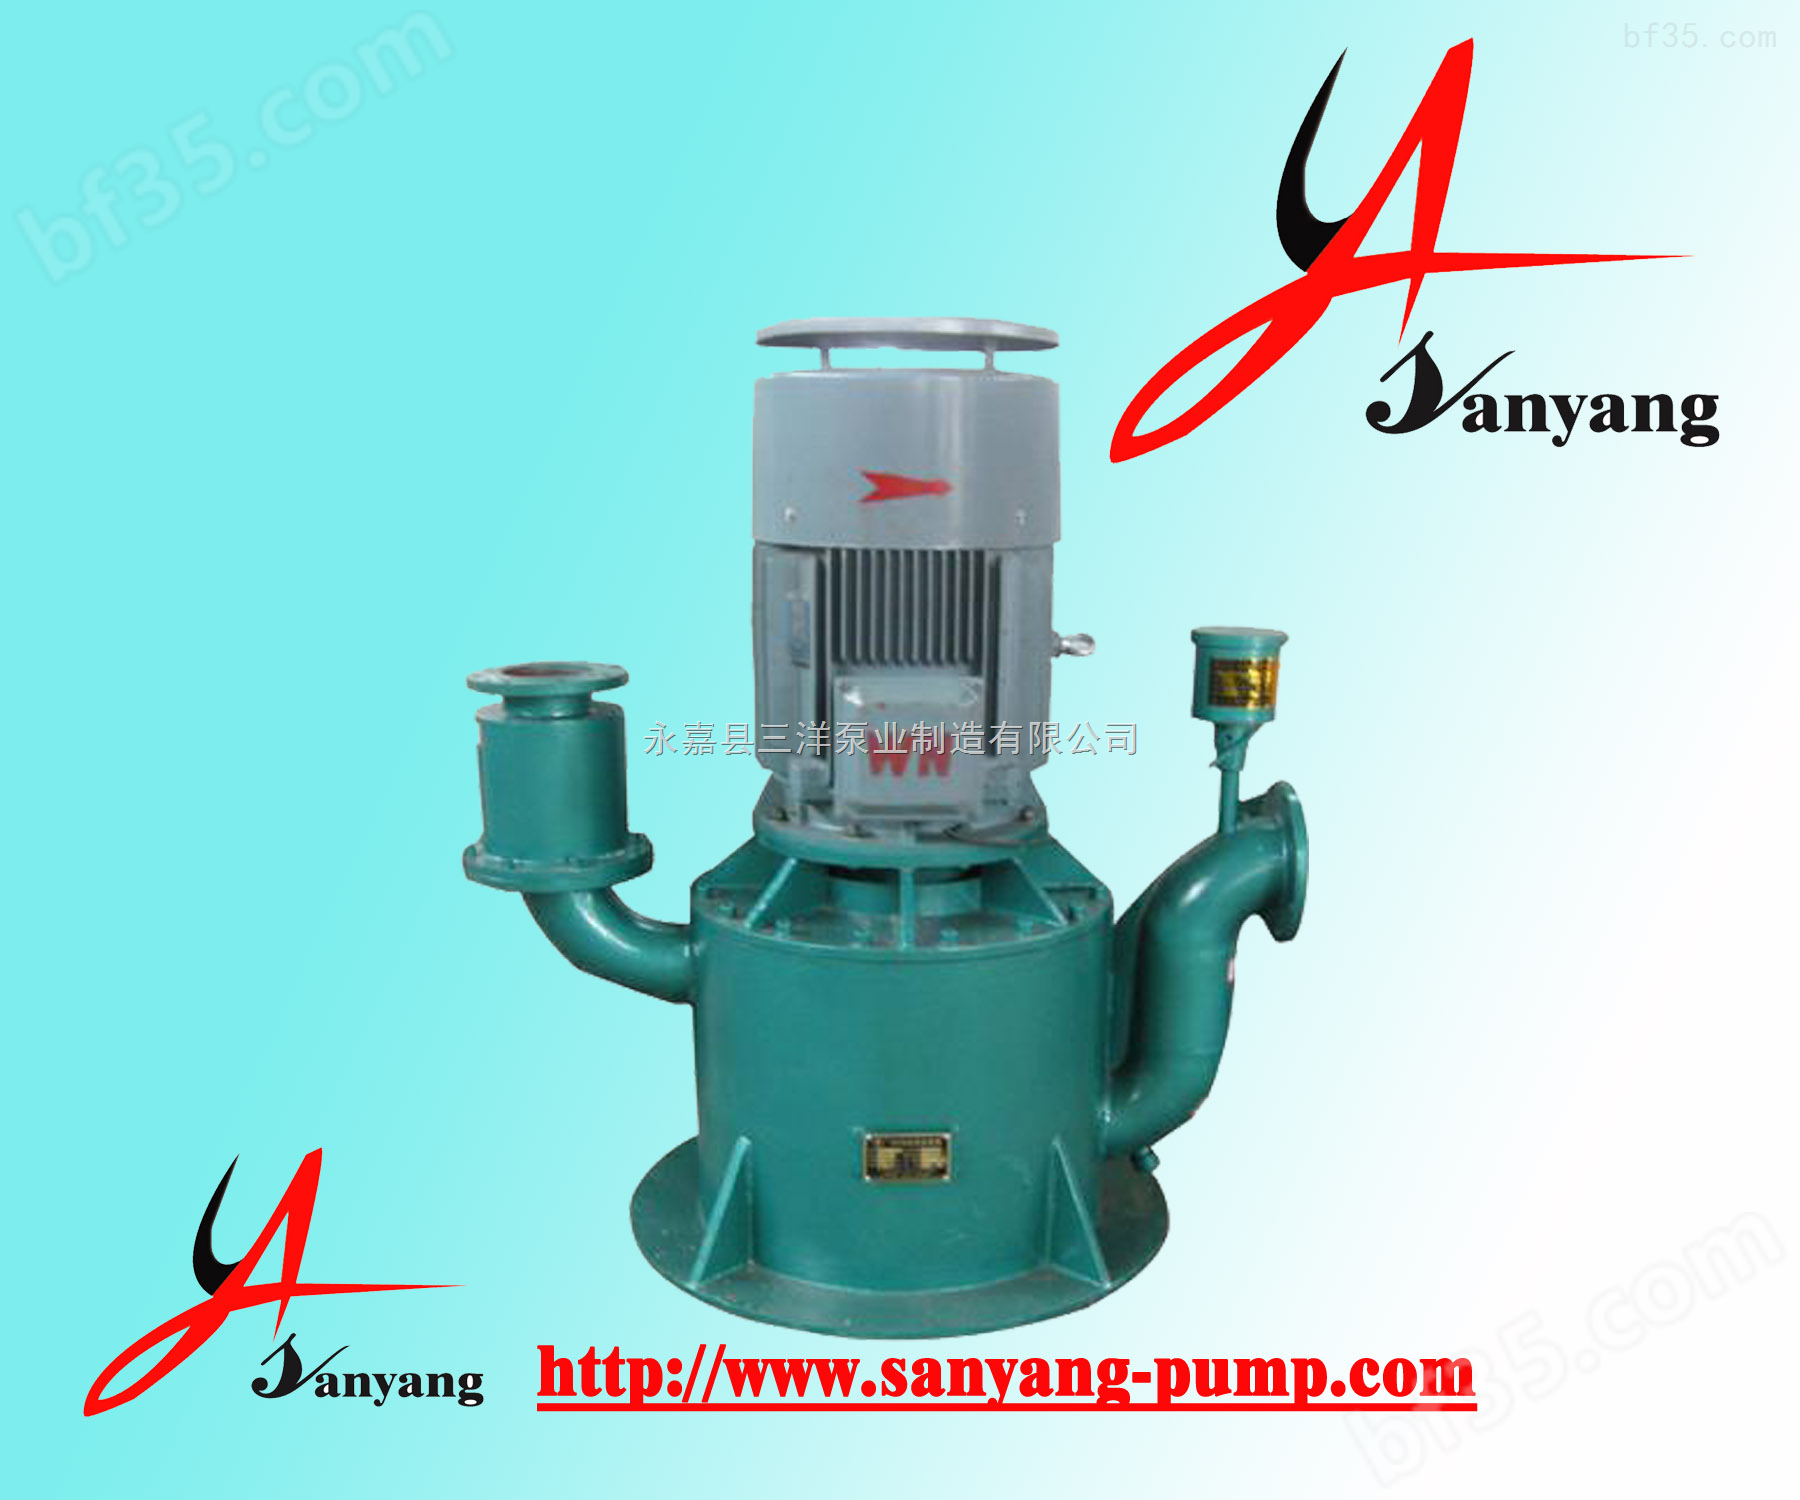 三洋泵业自吸泵,WFB耐温自控自吸泵,自吸泵生产厂家,自吸泵型号